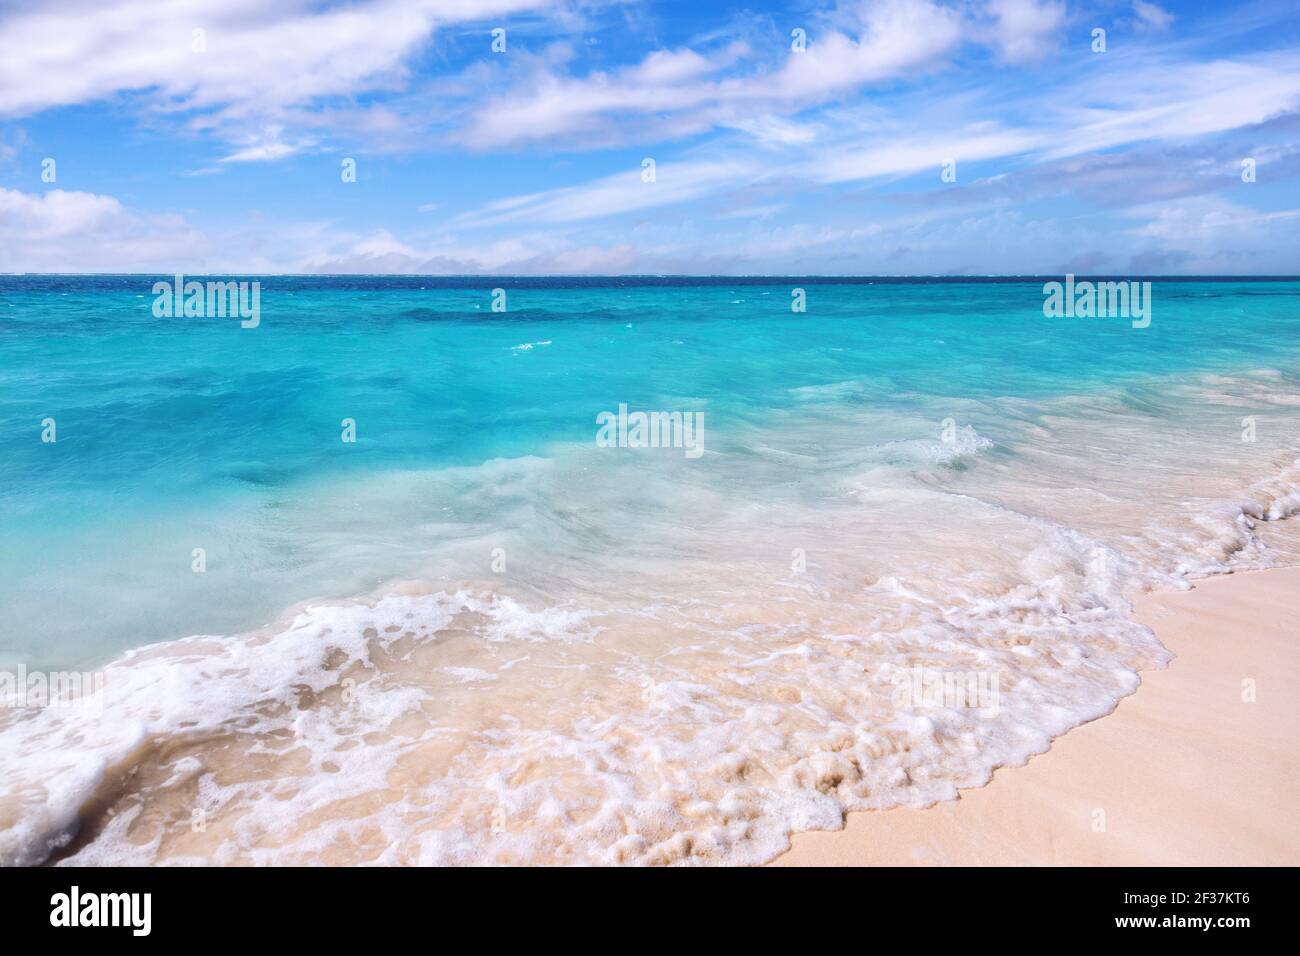 Puerto Morelos beach in Mayan Riviera Maya of Mexico Stock Photo